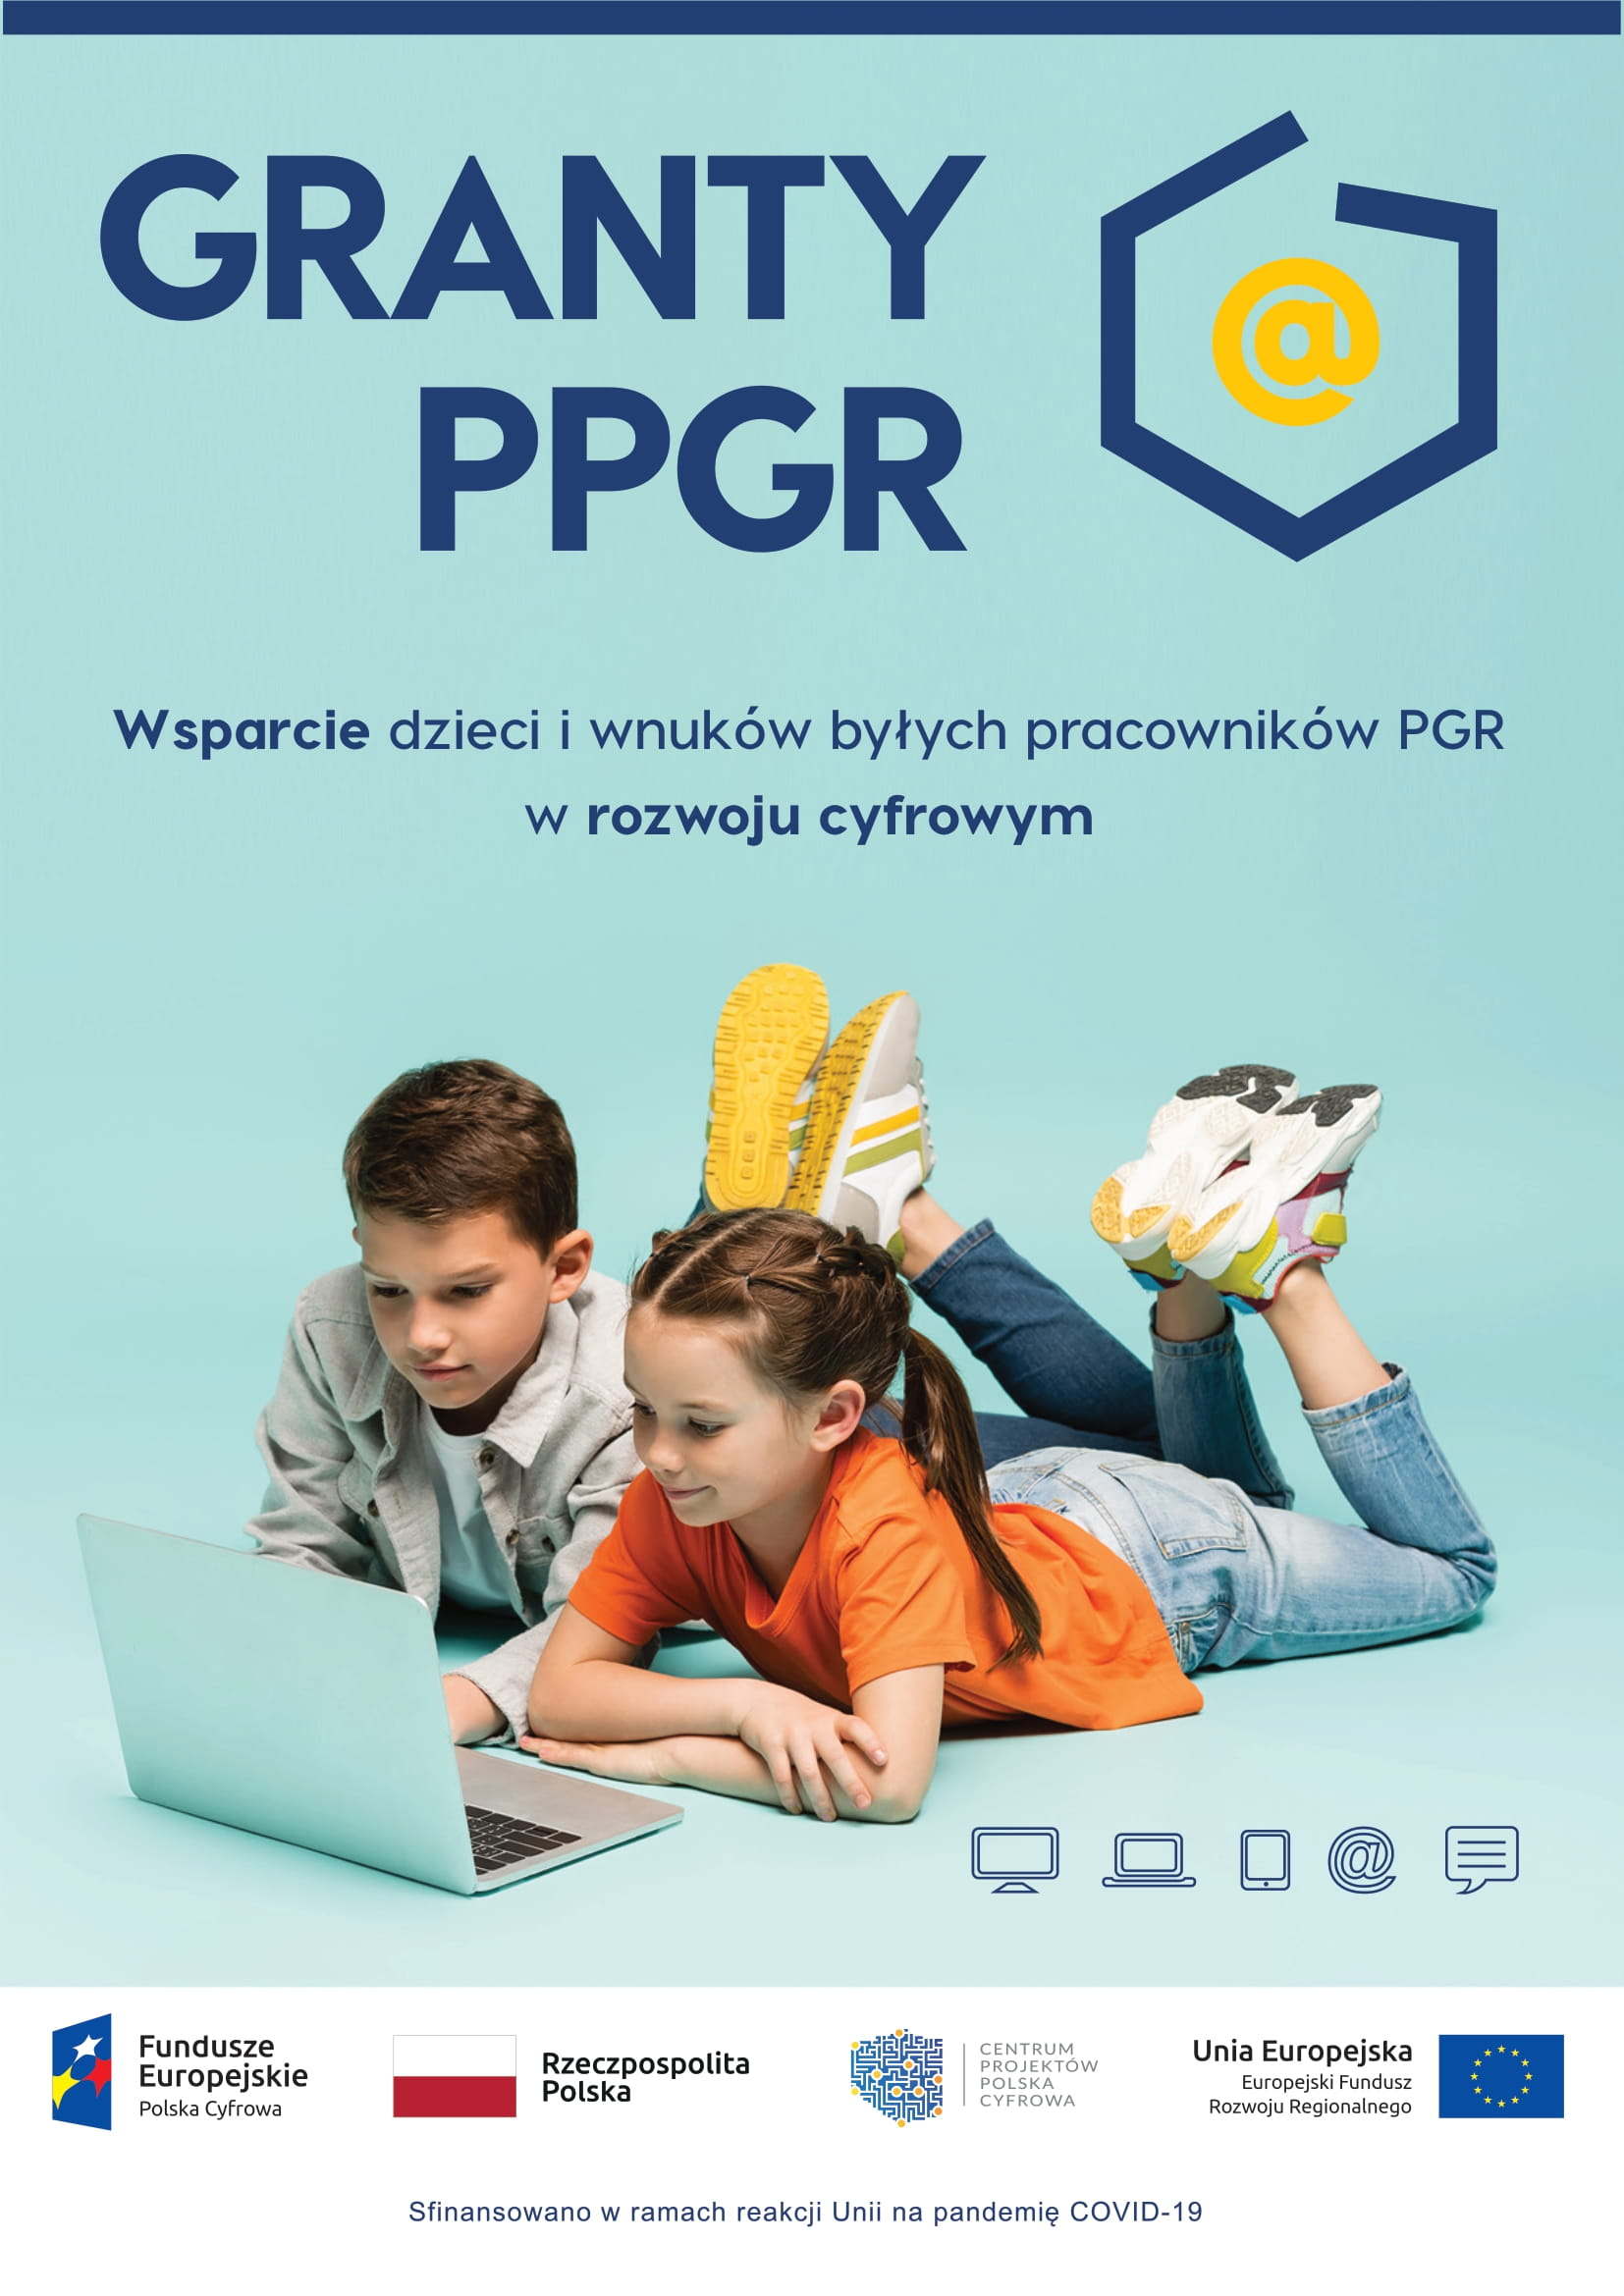 Plakat promujący Granty PPGR - Wsparcie dzieci i wnuków byłych pracowników PGR w rozwoju cyfrowym